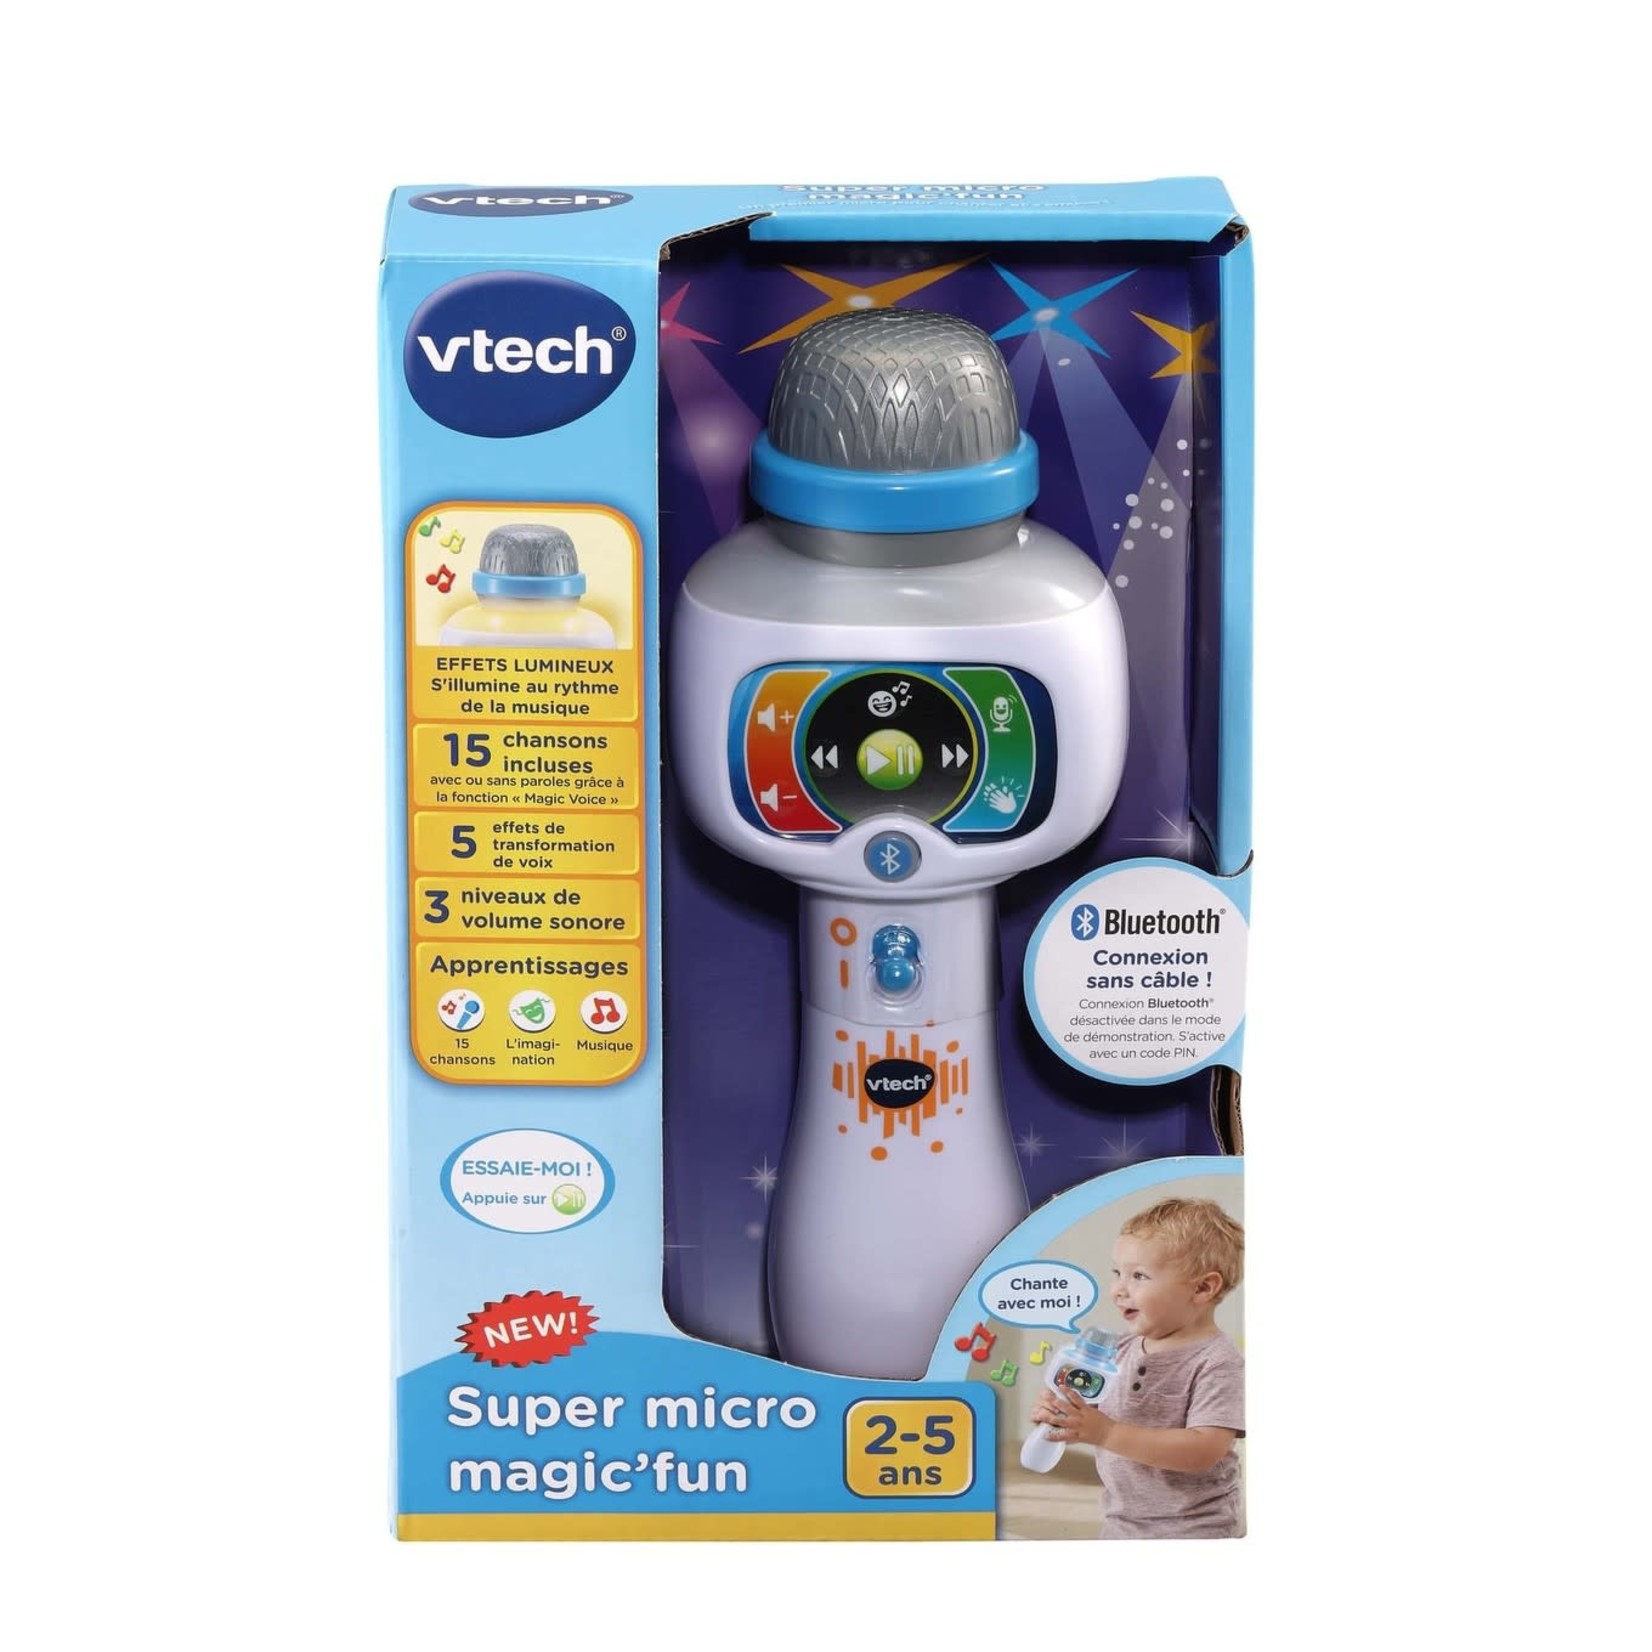 VTECH - Super micro Magic'fun - Dès 2 ans - Super U, Hyper U, U Express 